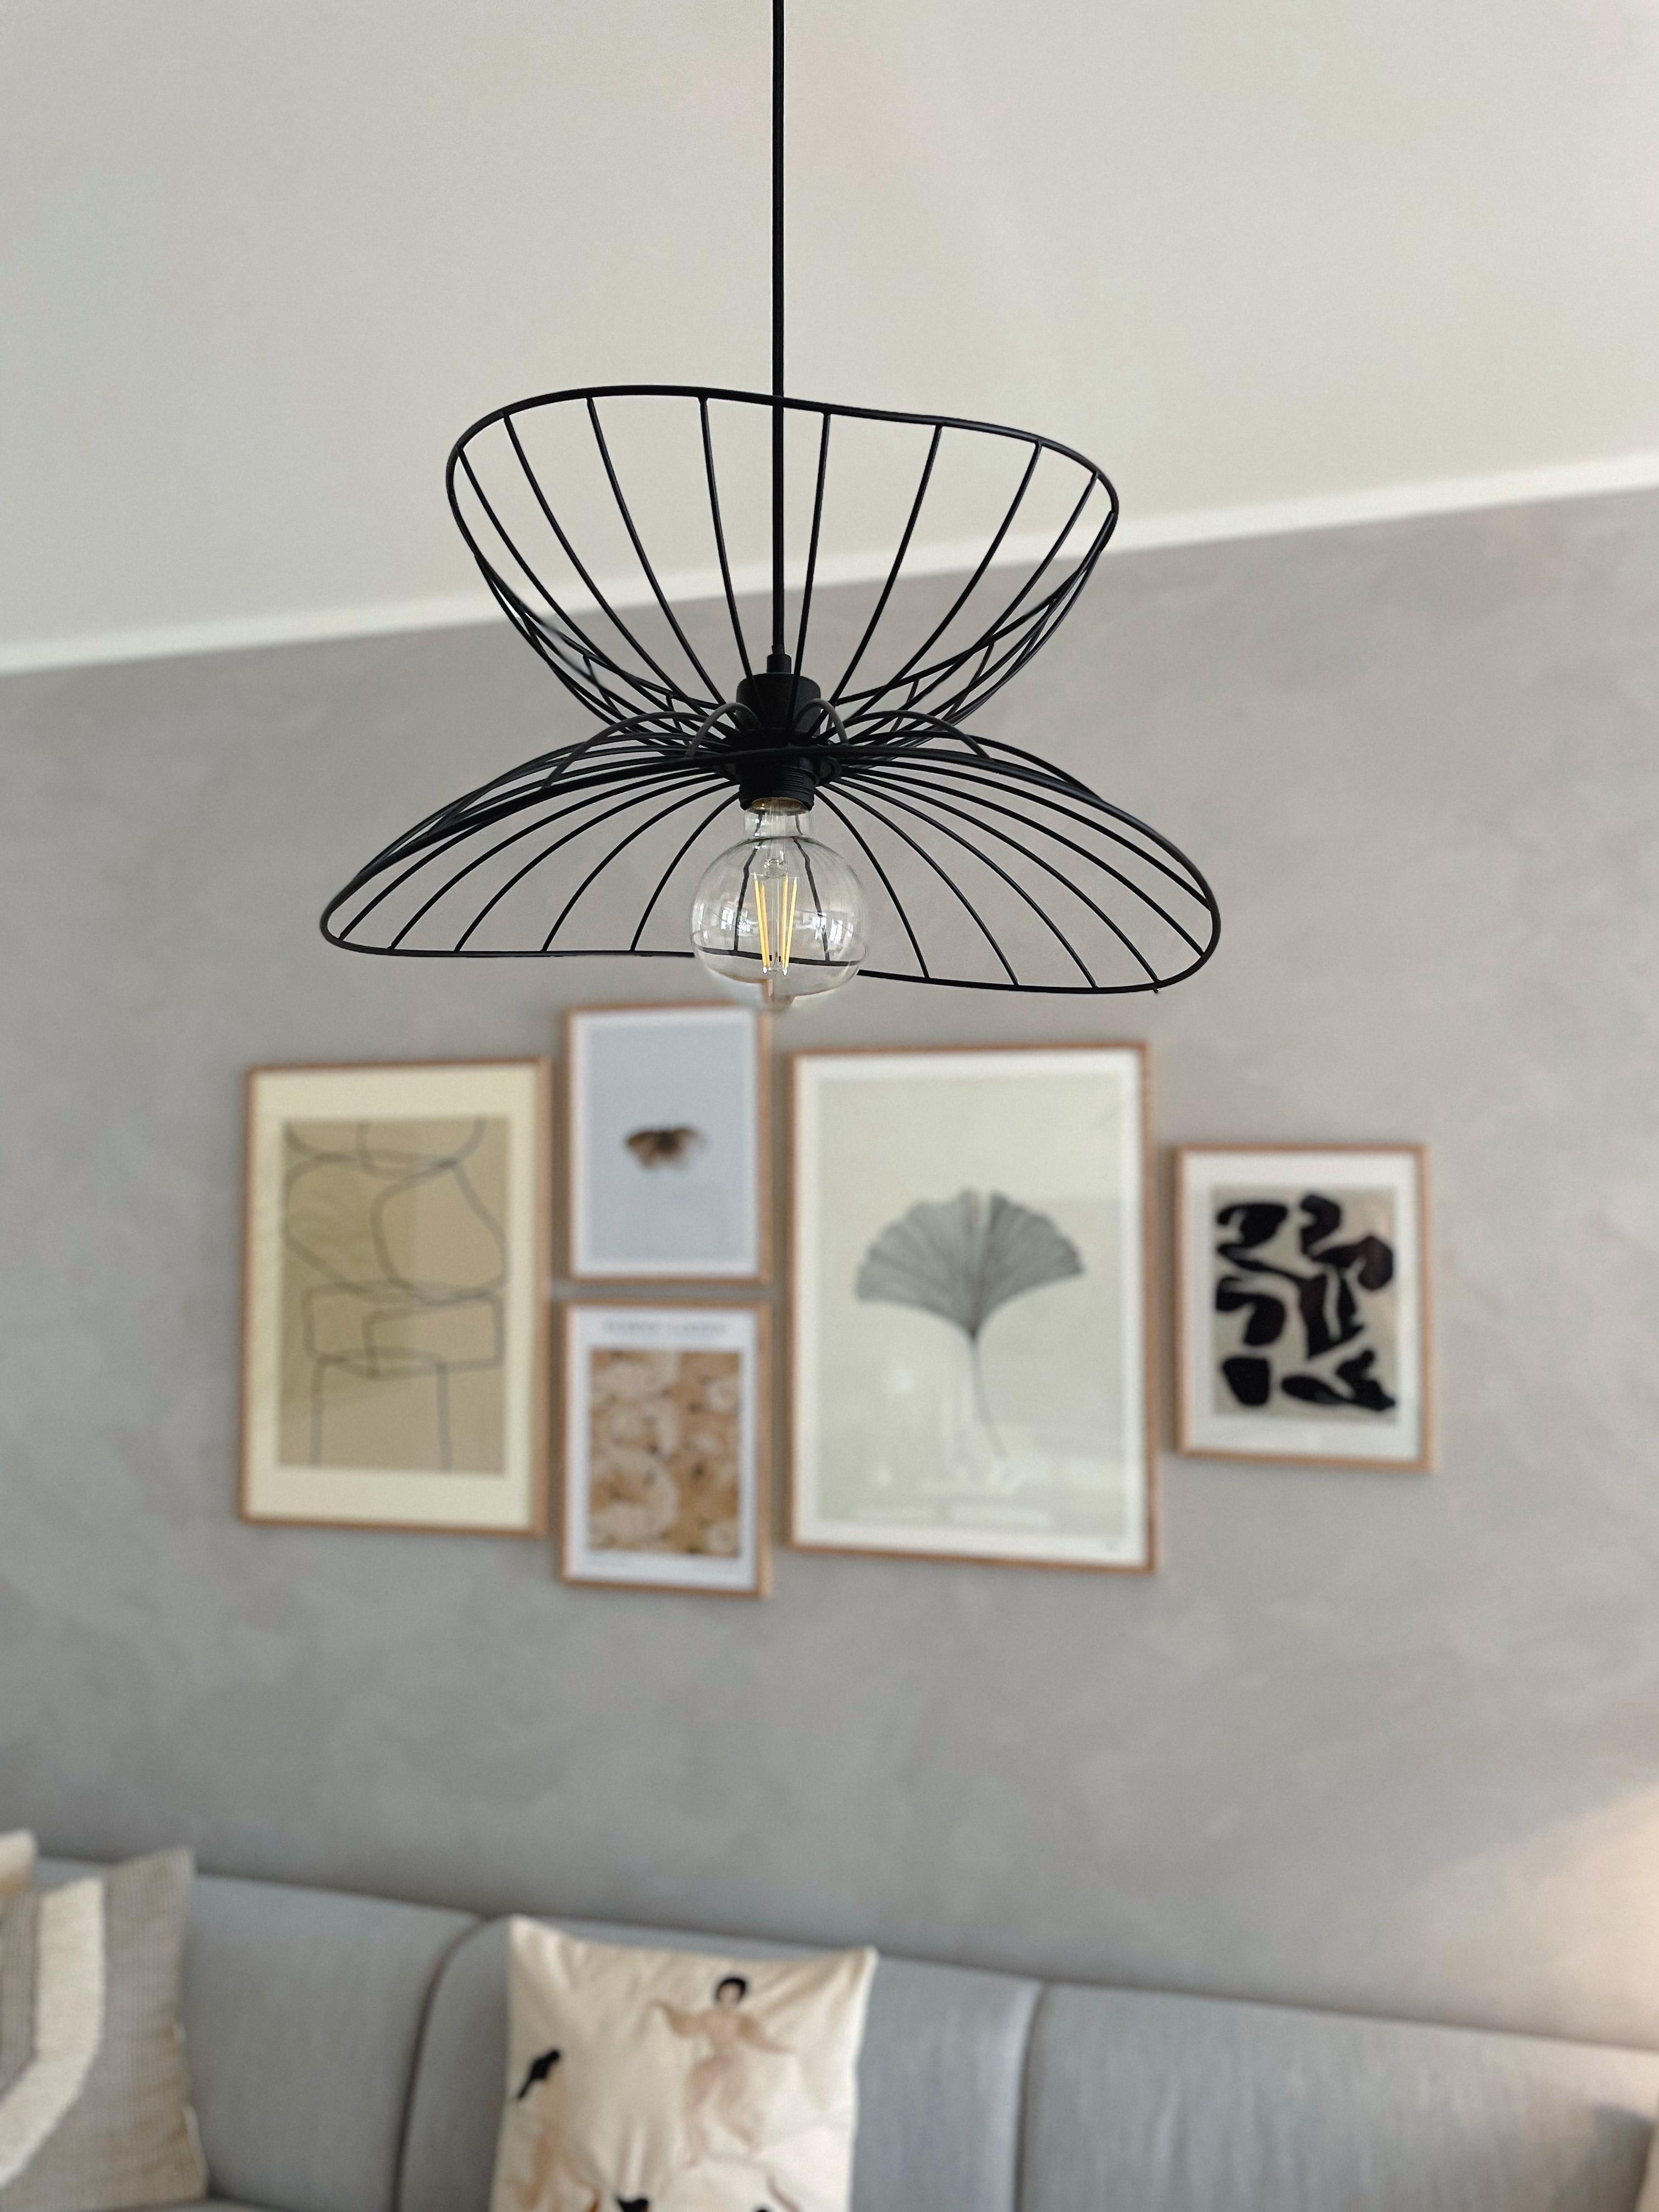 Hier kommt bald eine neue Lampe hin. :)
#Wohnzimmer #Wohnzimmerinspo #Wohnzimmerdeko #Interior #Lampe #pendeleuchte